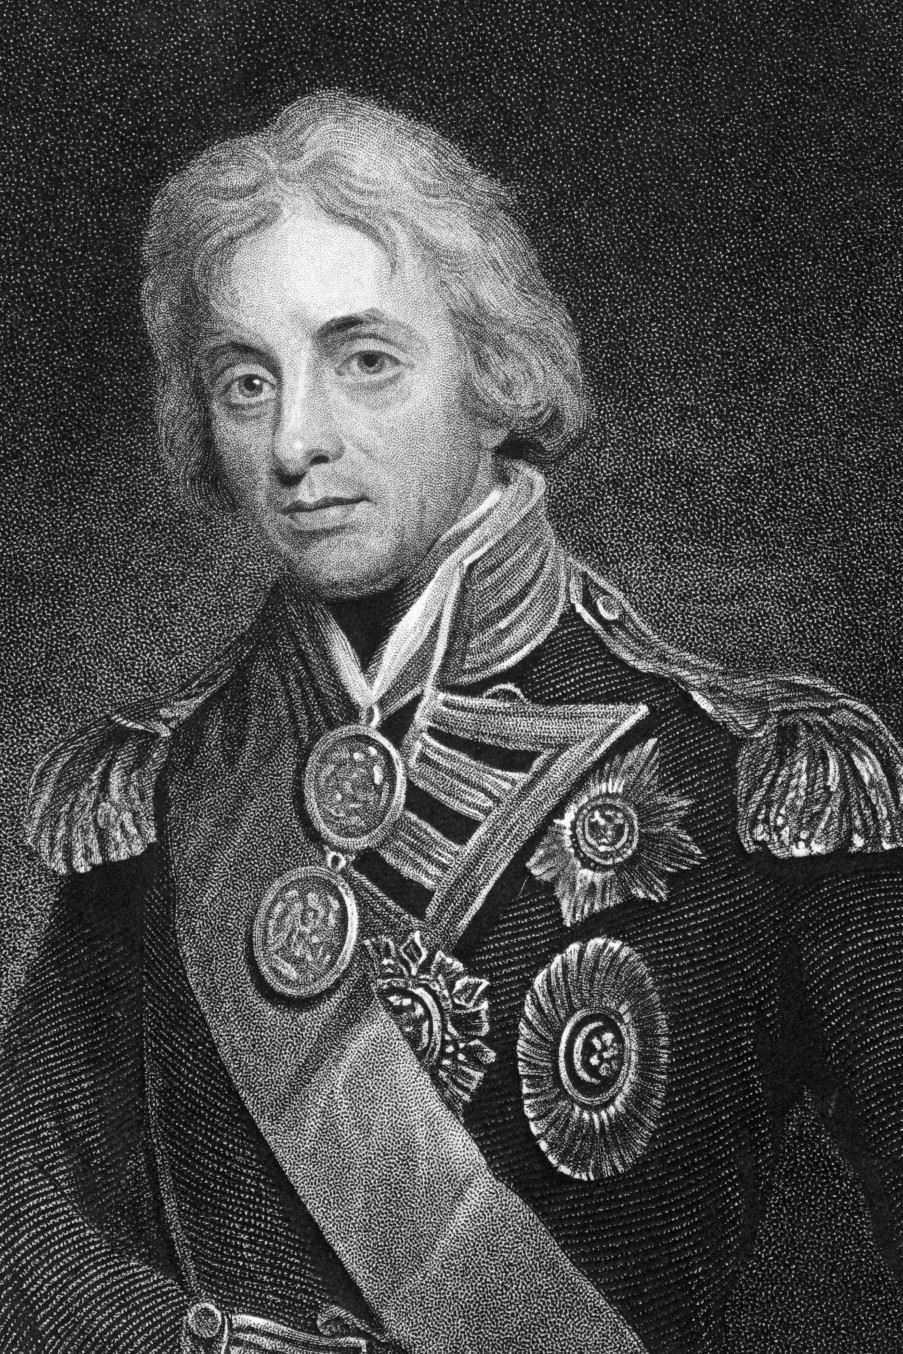 Admiral Nelson - 'Duke of Bronte'